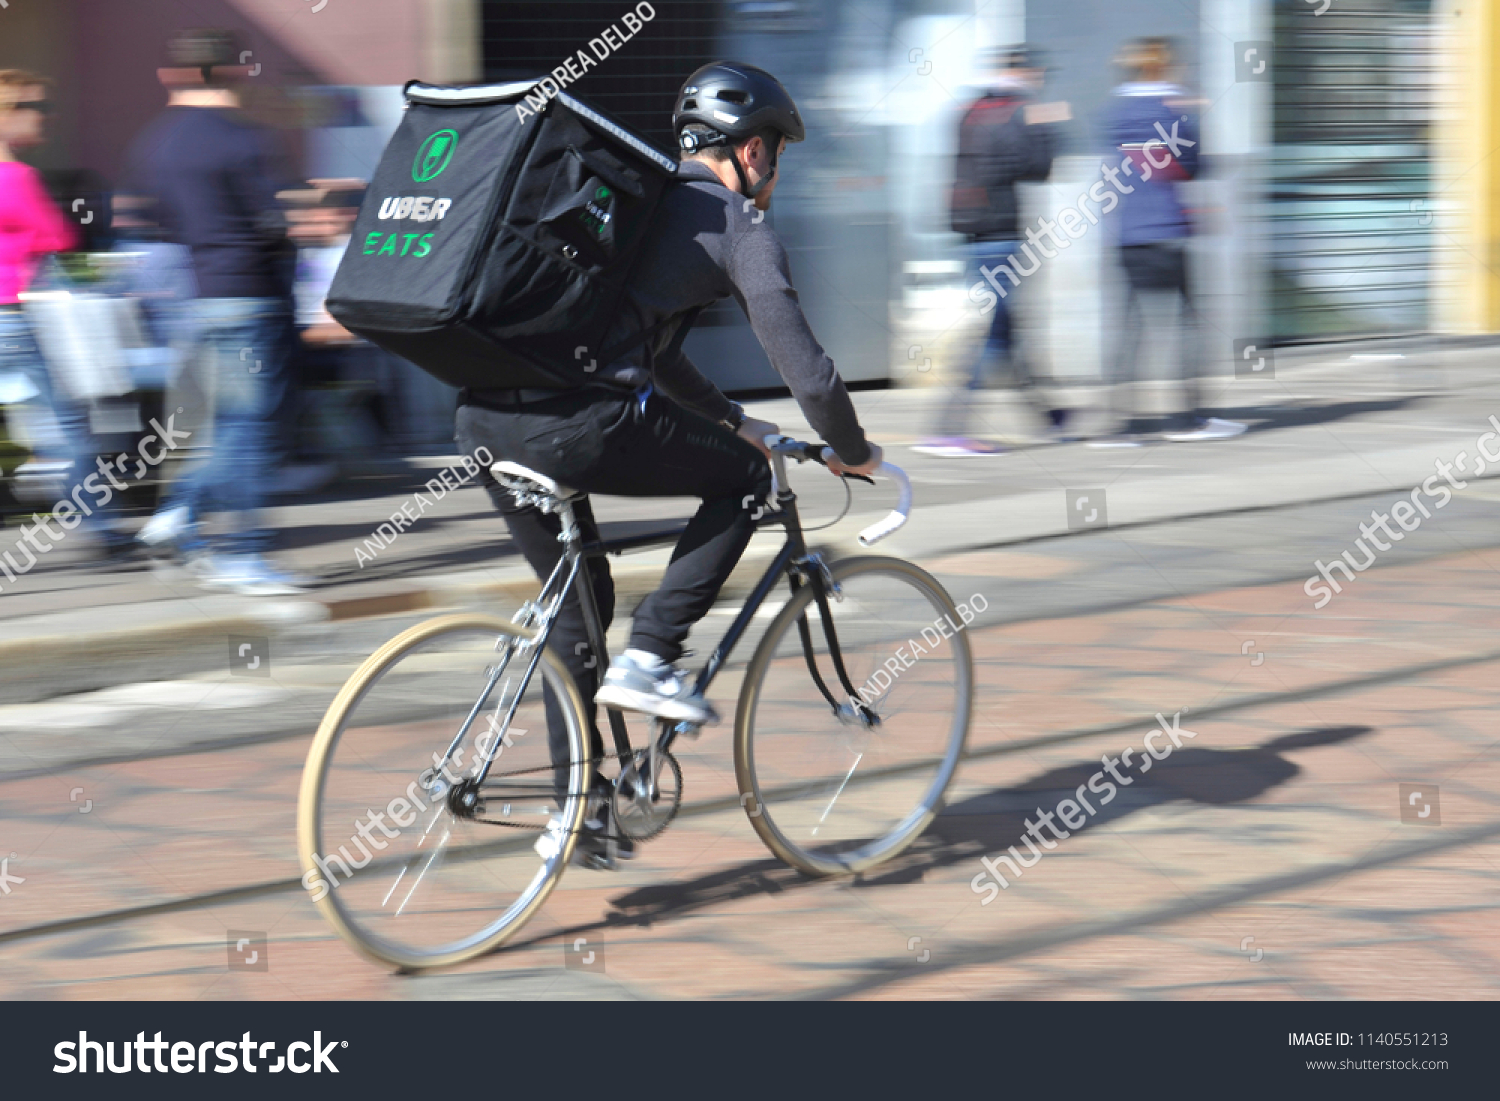 uber eats using bike